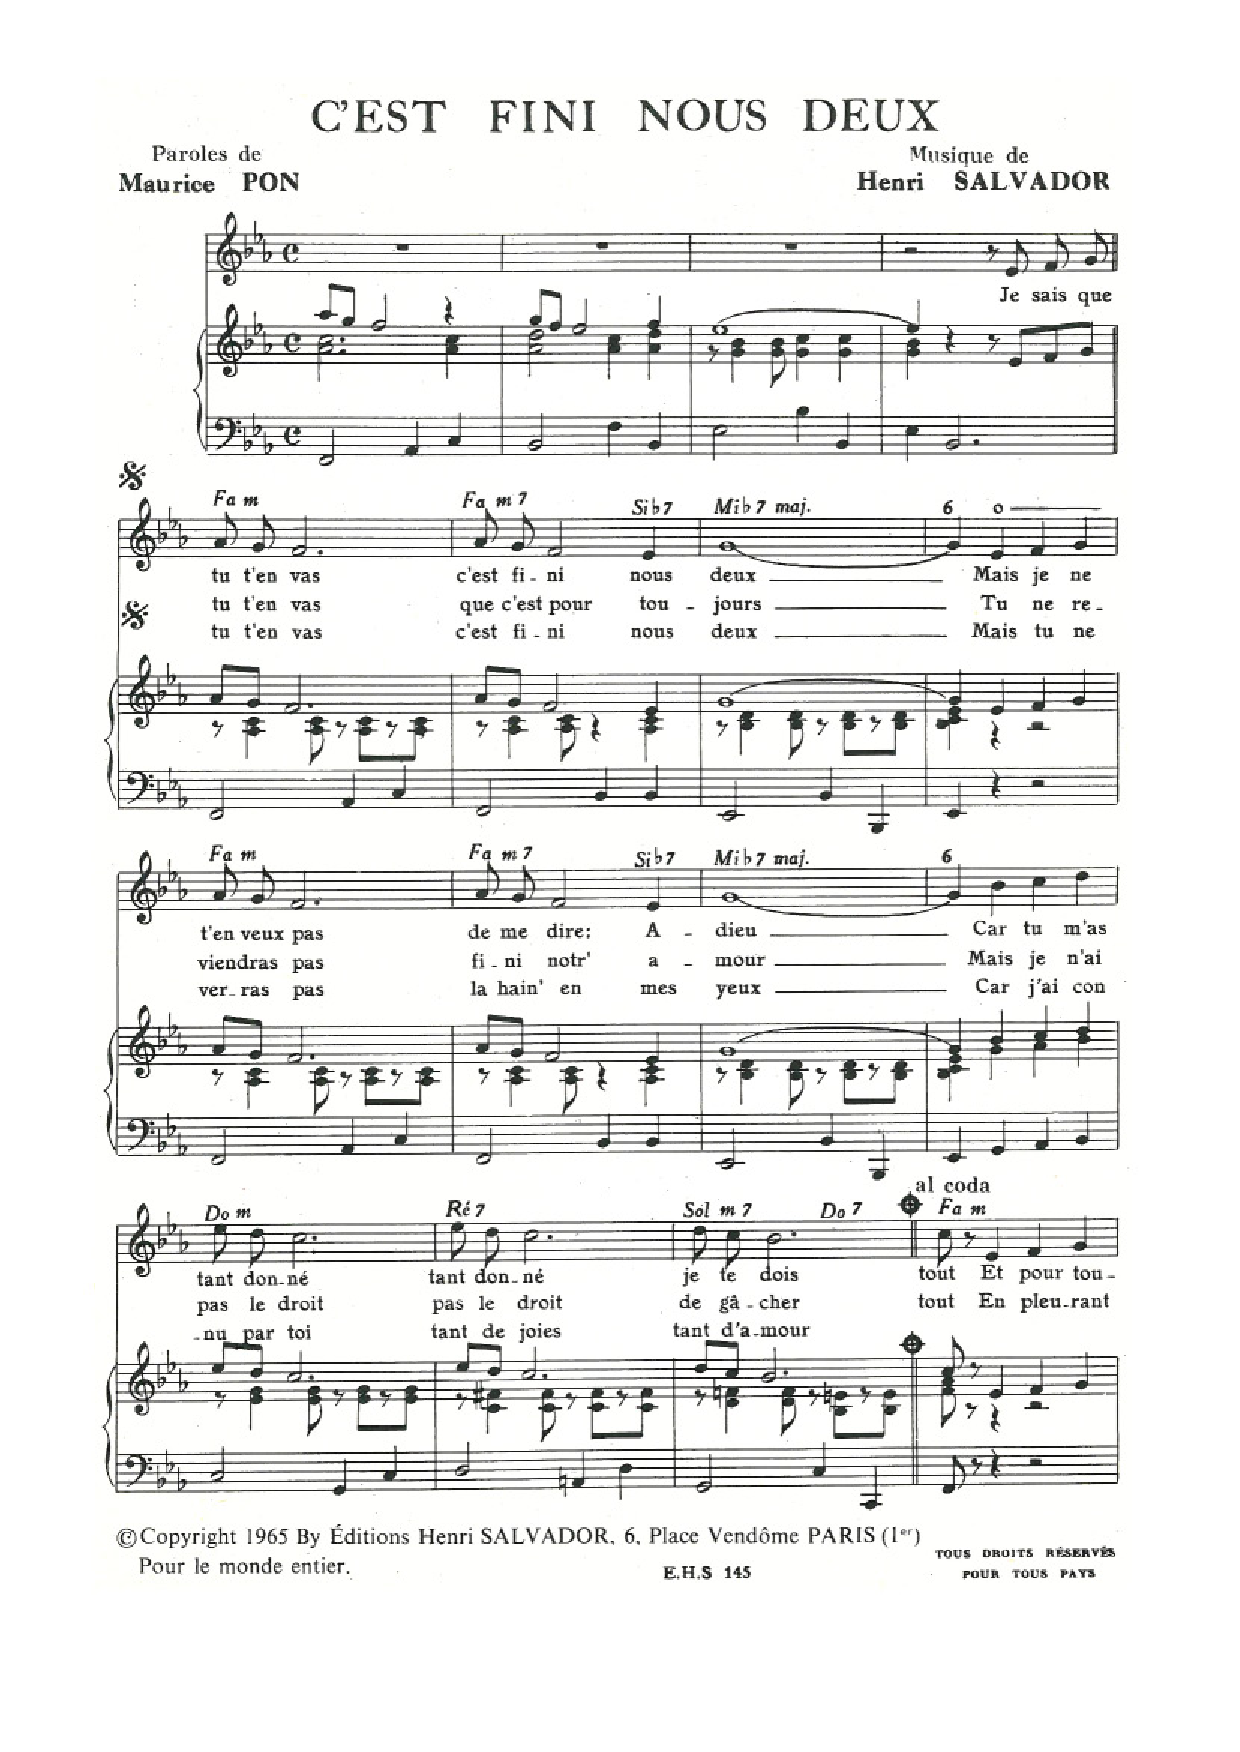 Henri Salvador C'est Fini (Pour) Nous Deux Sheet Music Notes & Chords for Piano & Vocal - Download or Print PDF